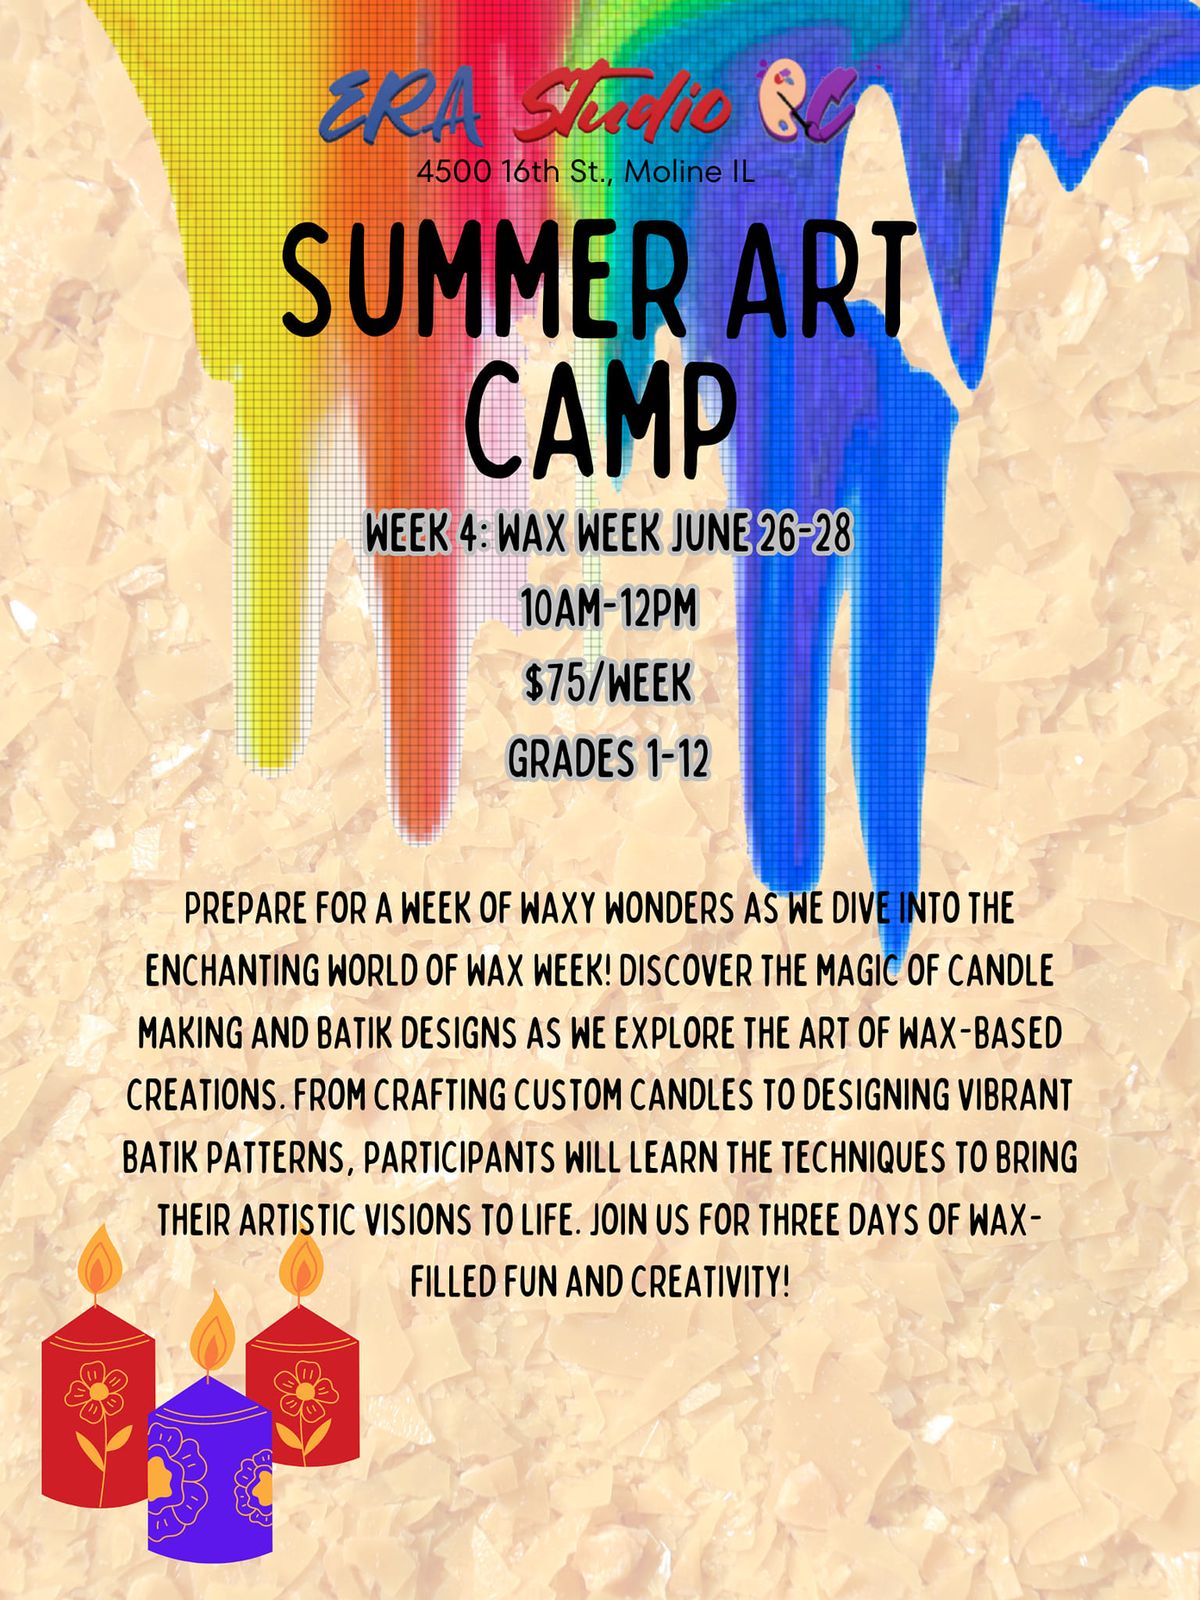 Summer ART Camp: Wax Week 